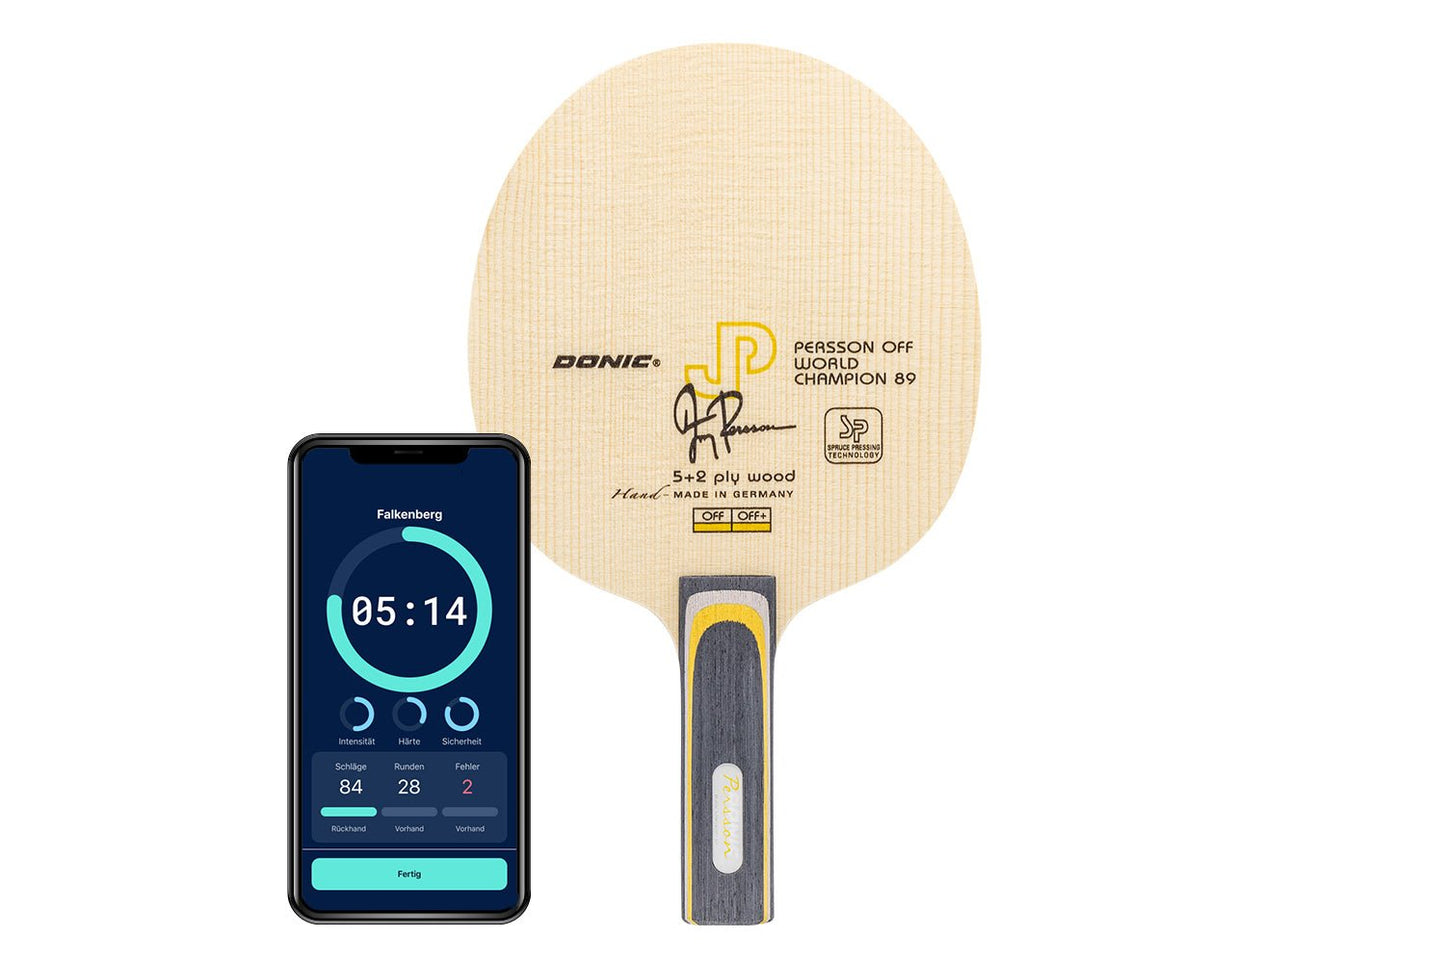 Donic Persson Off+ Weltmeister 89 Tischtennisschläger mit geradem Griff und Smartphone zeigt Daten des Schlägers vor weißem Hintergrund